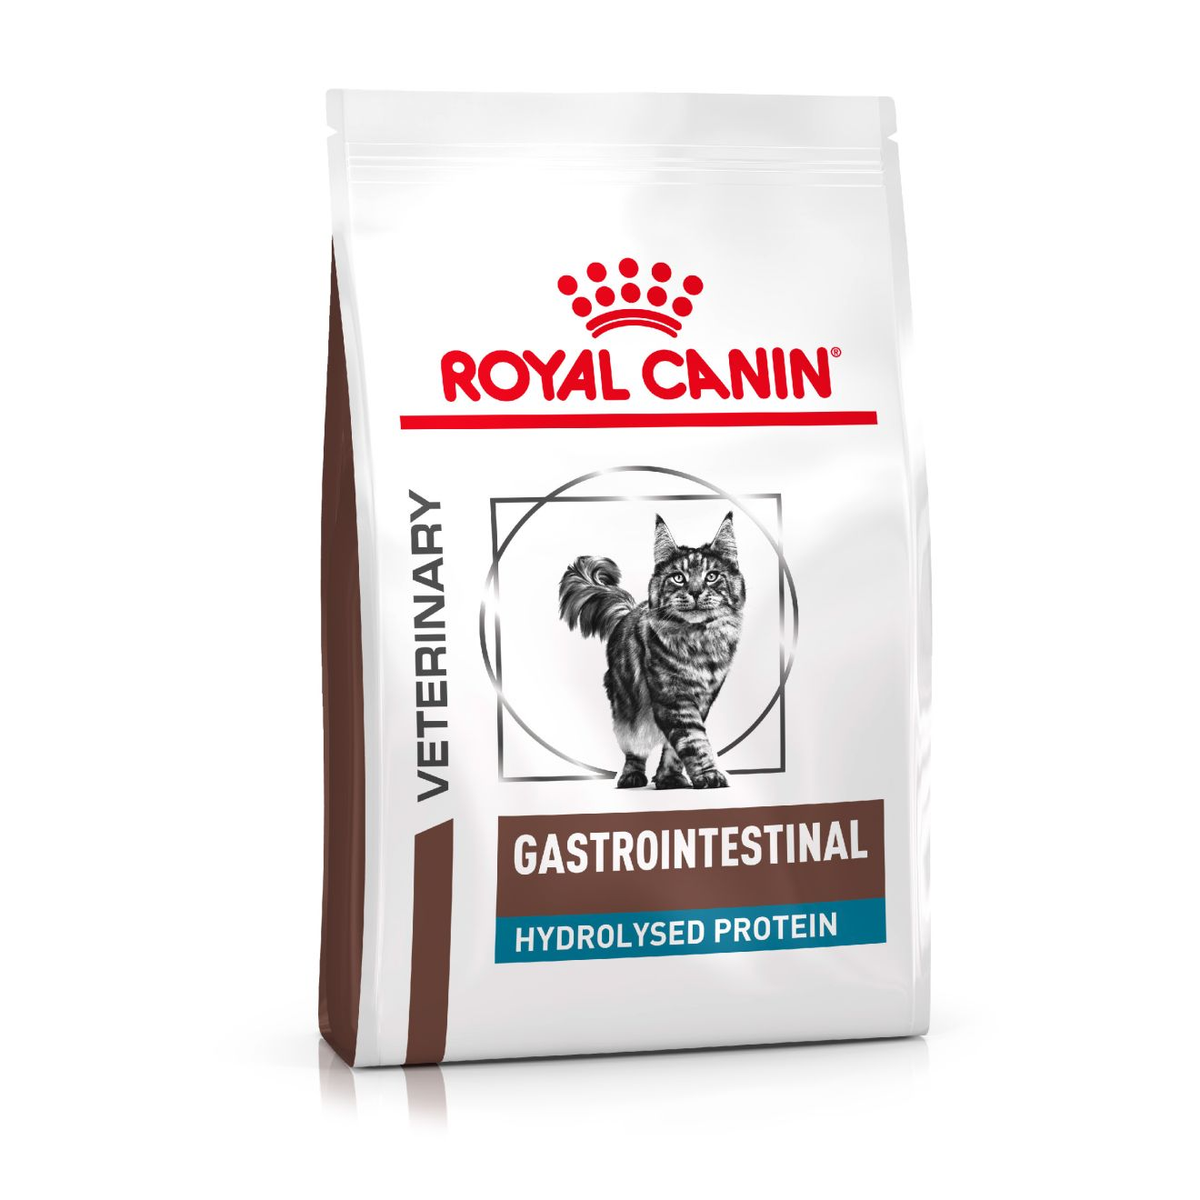 Royal Canin Gastrointestinal Hydrolyzed Protein Cat food 6lbs.